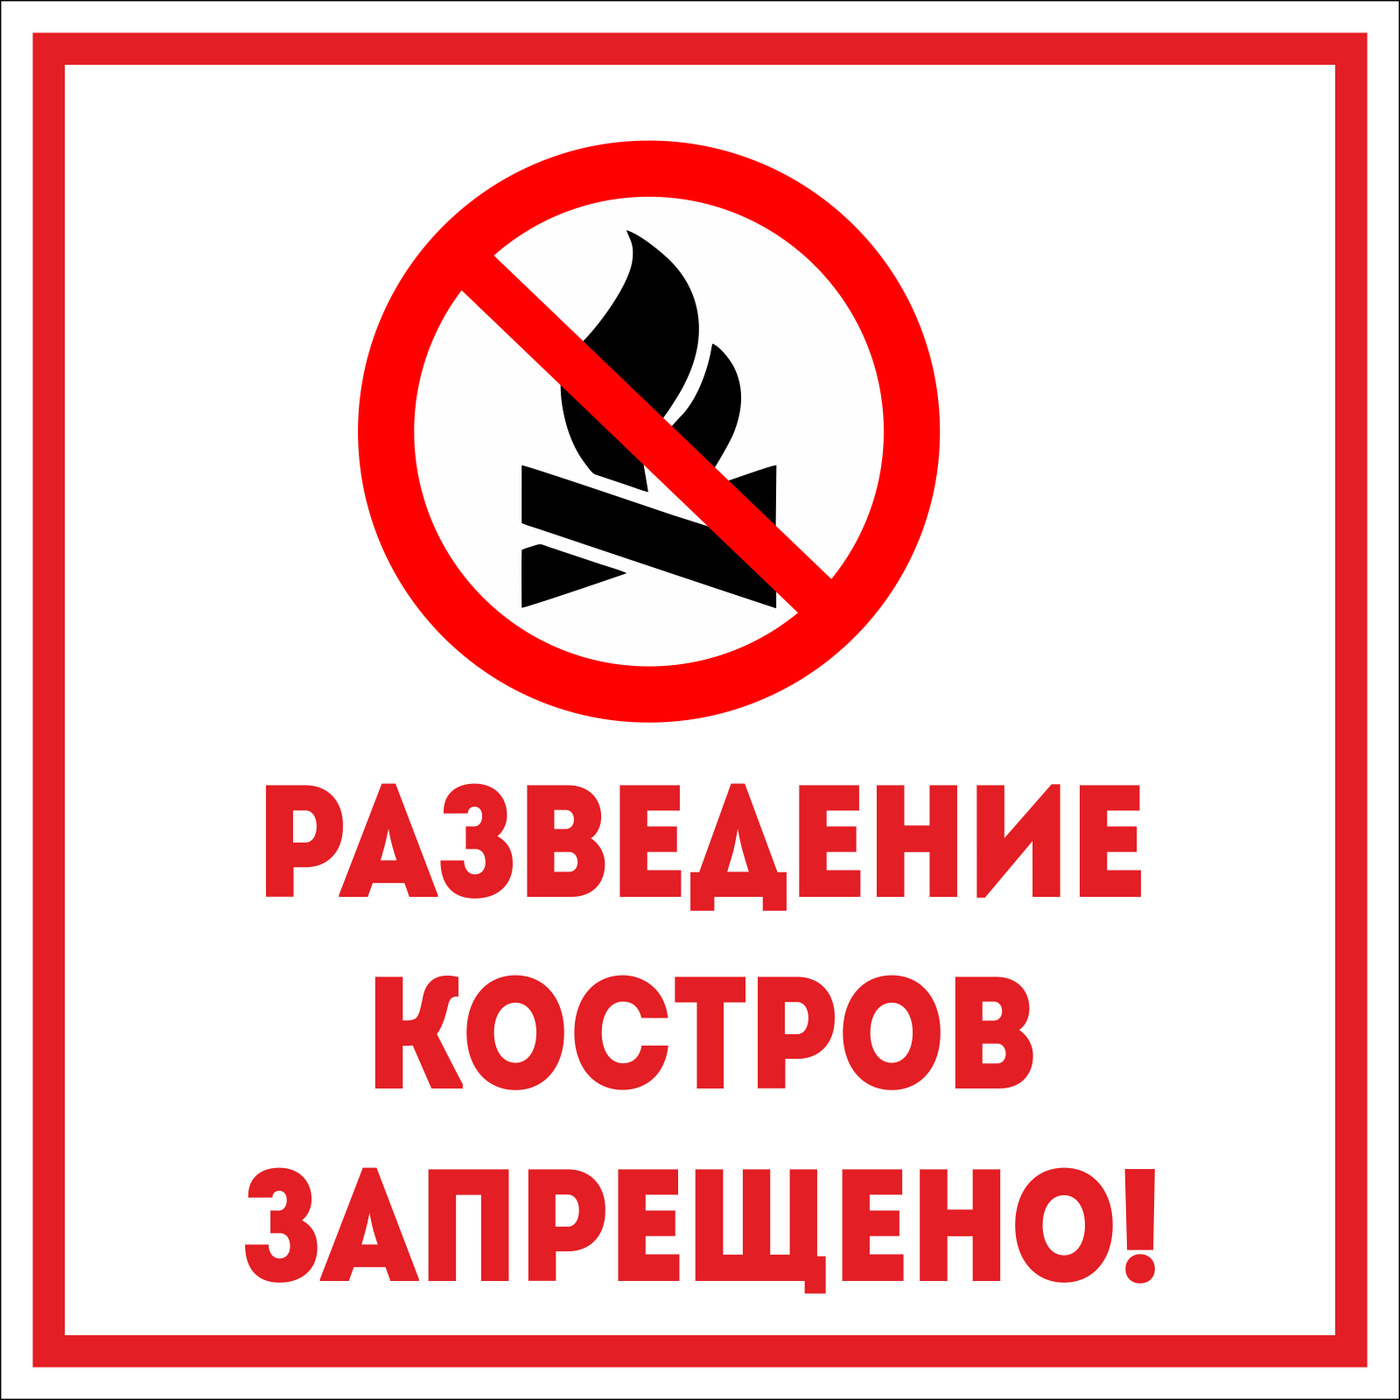 Разводить костер в лесу запрещено. Разведение костров запрещено. Разведение костров запрещено табличка. Табличка о запрете разведения костров. Разведение костров в лесу запрещено.